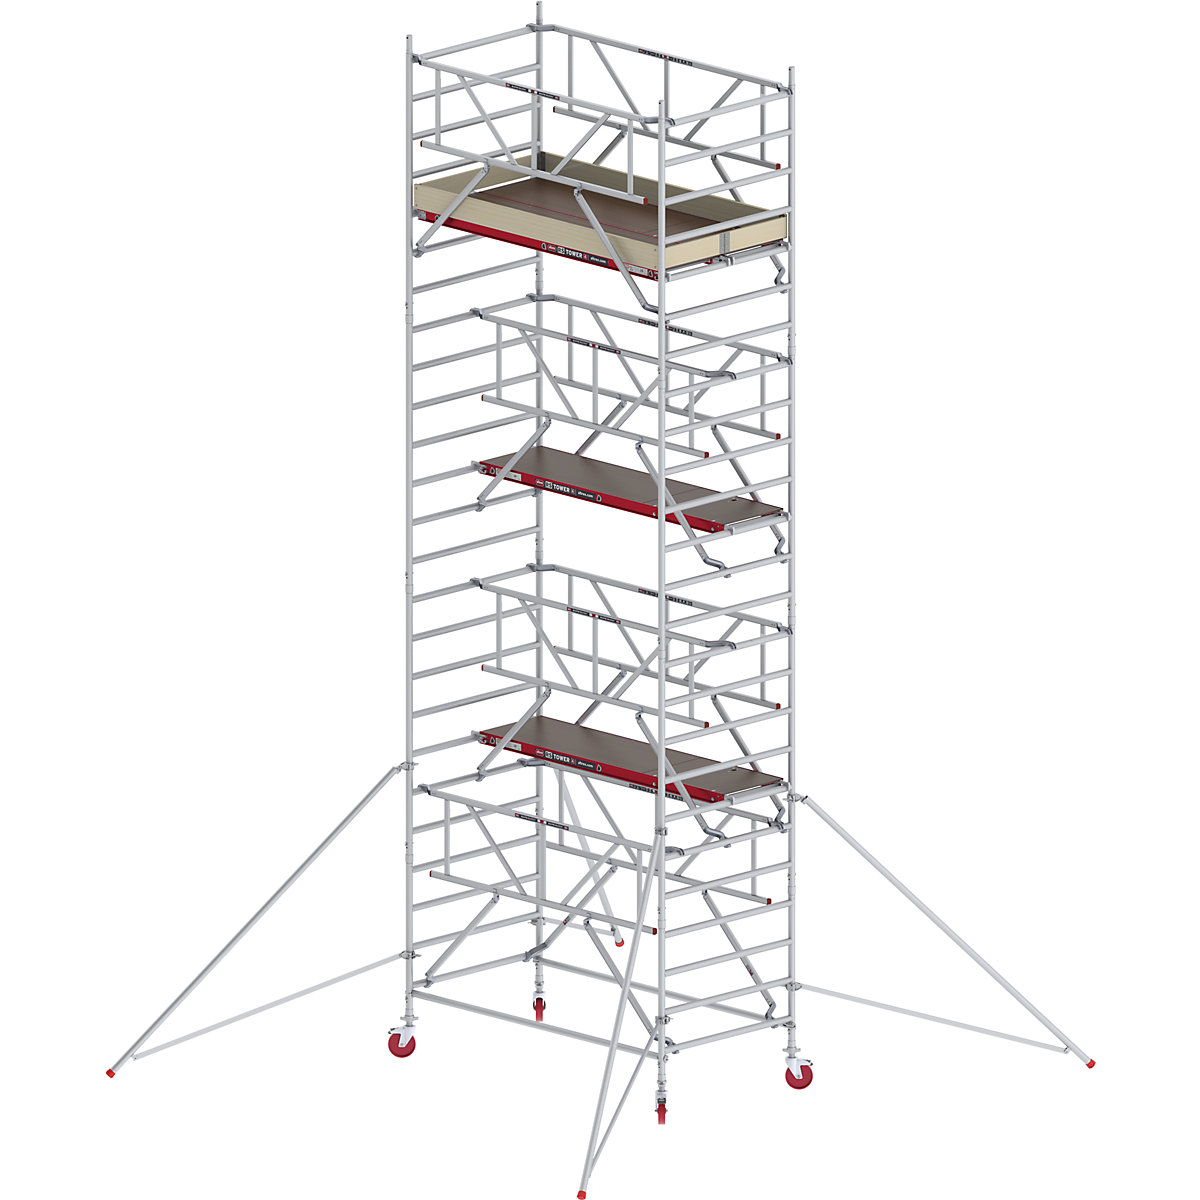 Altrex Fahrgerüst RS TOWER 42 breit mit Safe-Quick®, Holzplattform, Länge 1,85 m, Arbeitshöhe 8,20 m